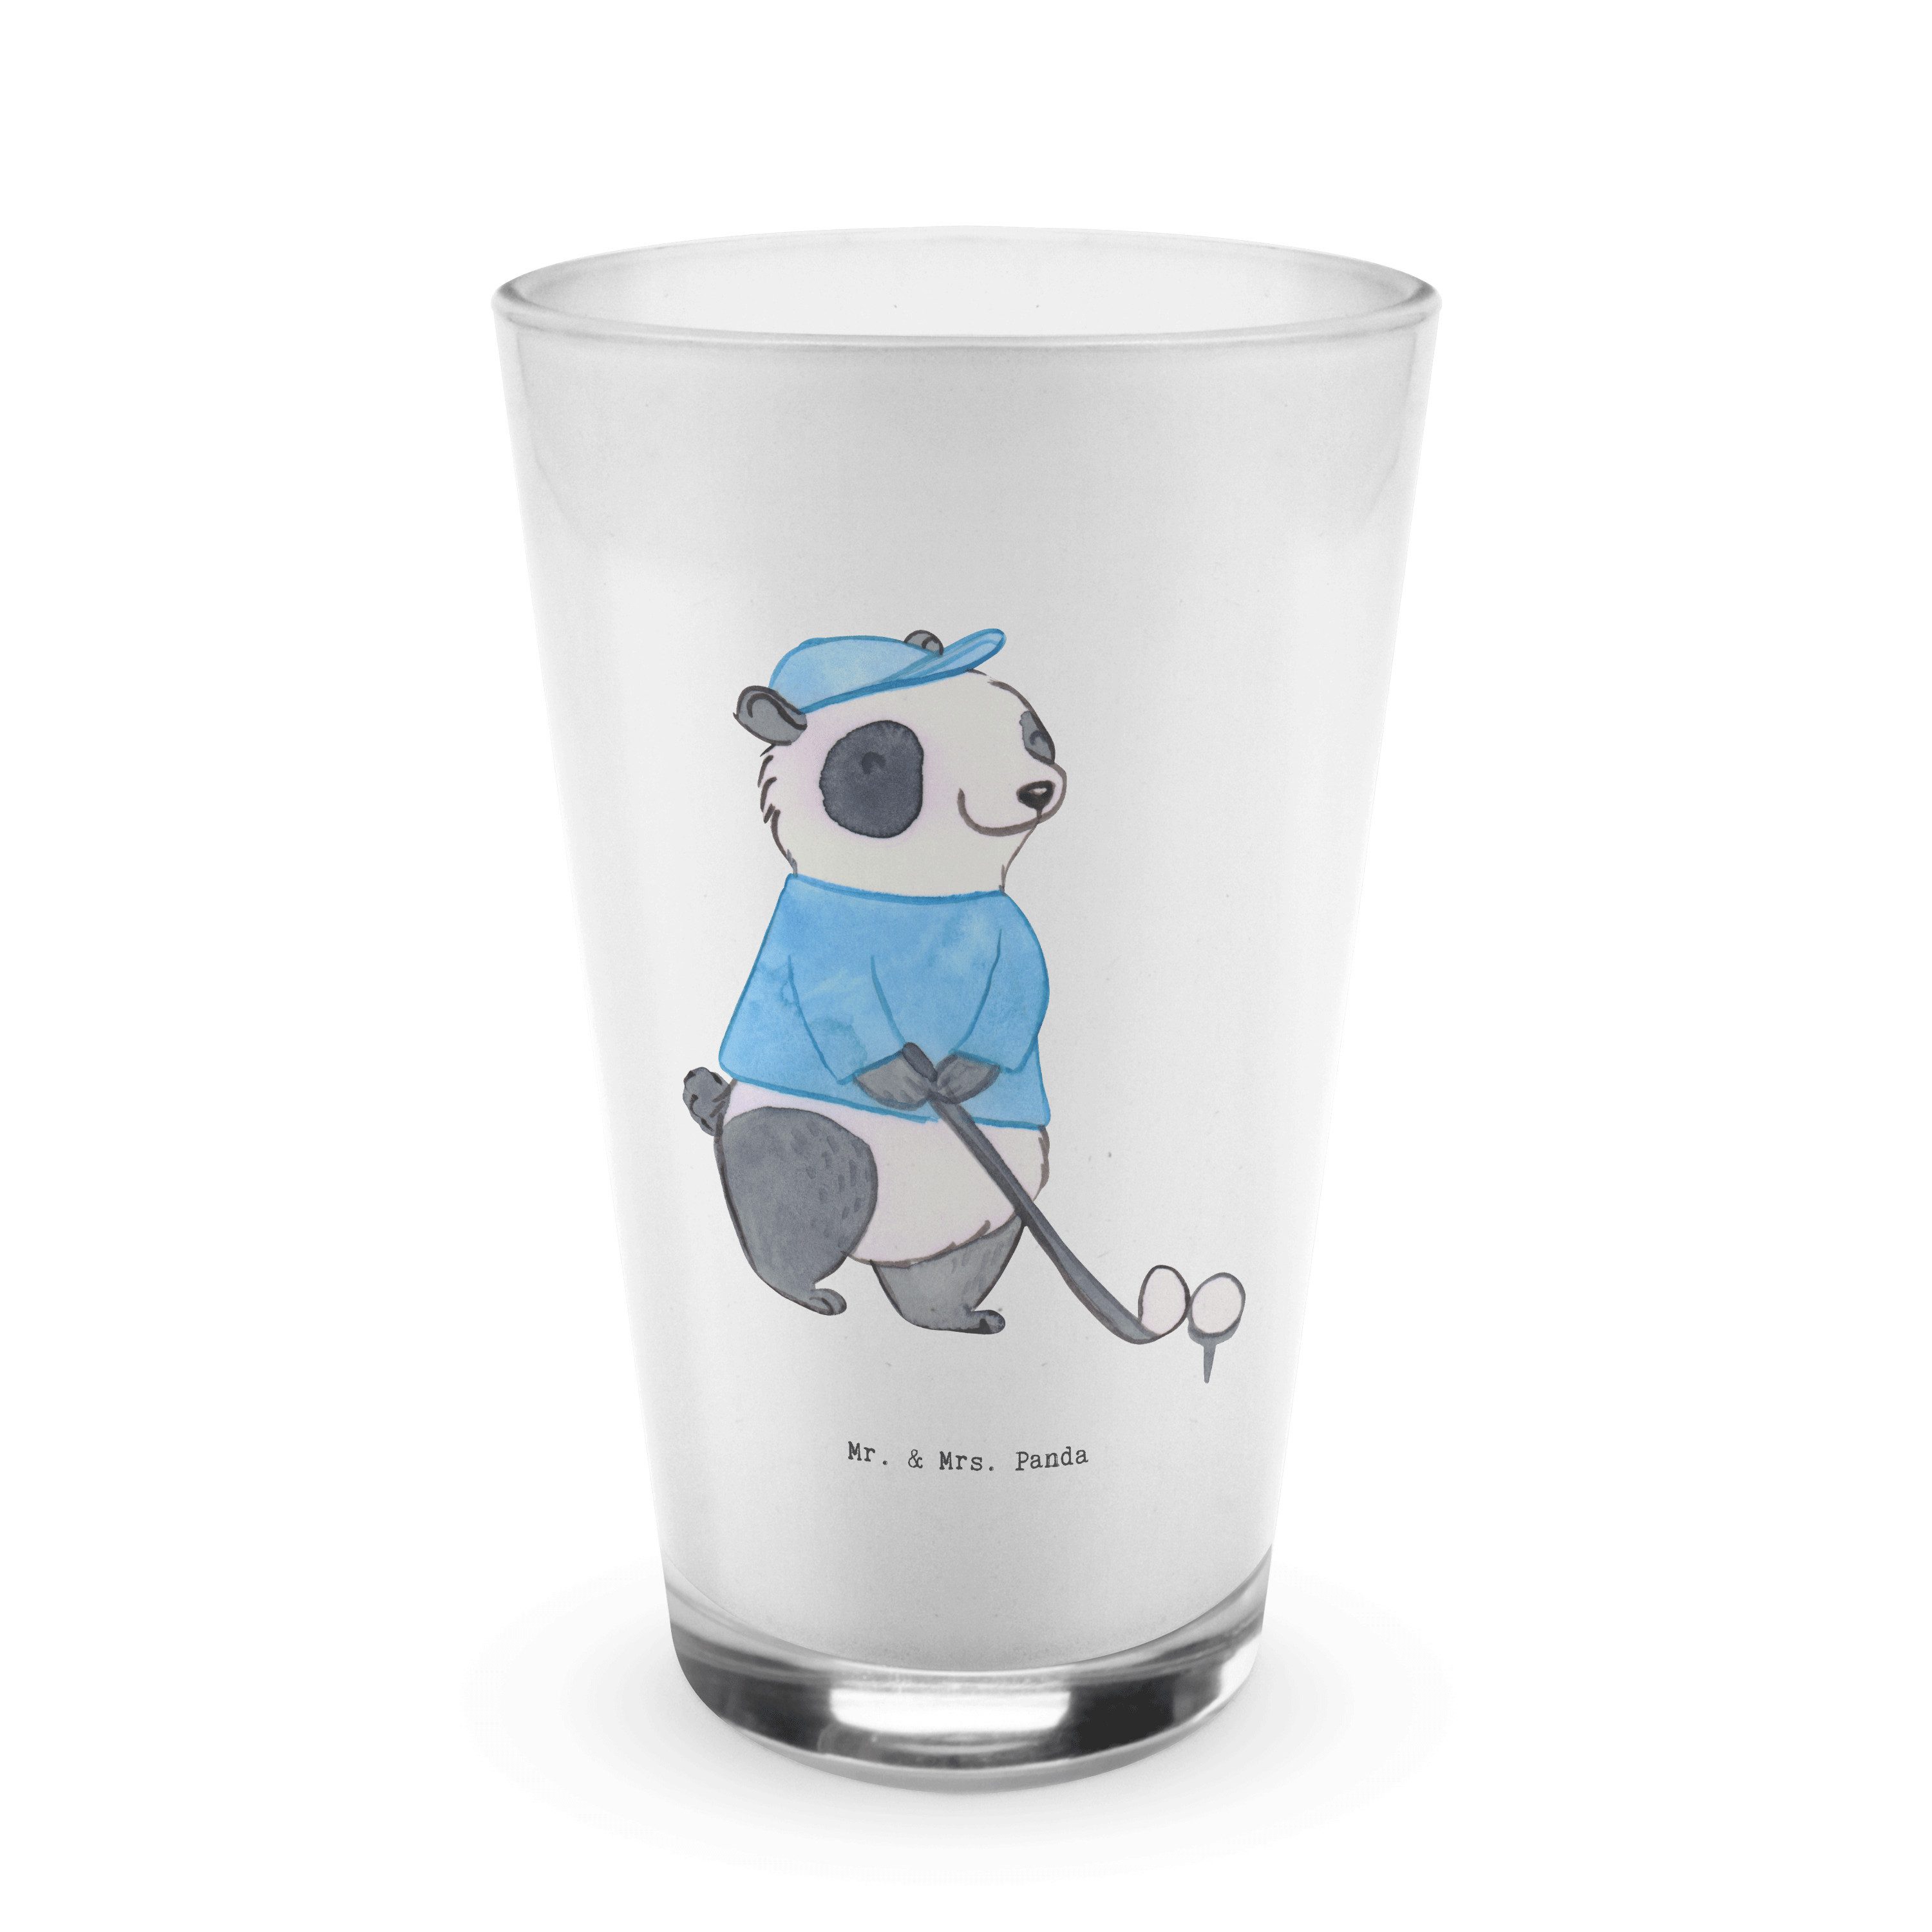 Mr. & Mrs. Panda Glas Panda Golfen - Transparent - Geschenk, Golf Verein, Auszeichnung, Gol, Premium Glas, Edles Matt-Design